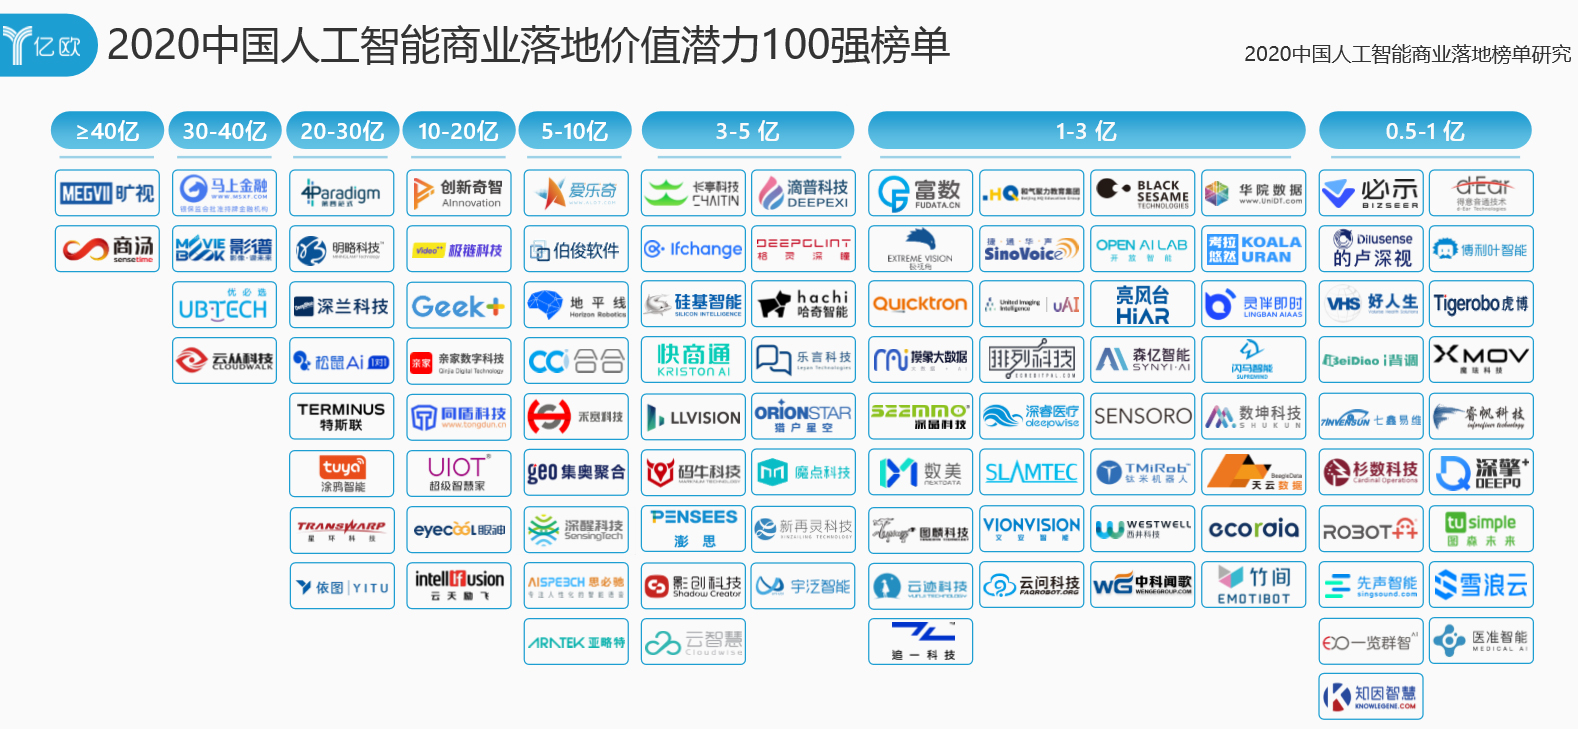 思岚科技成功跻身“2020 中国人工智能商业落地价值潜力100强”榜单